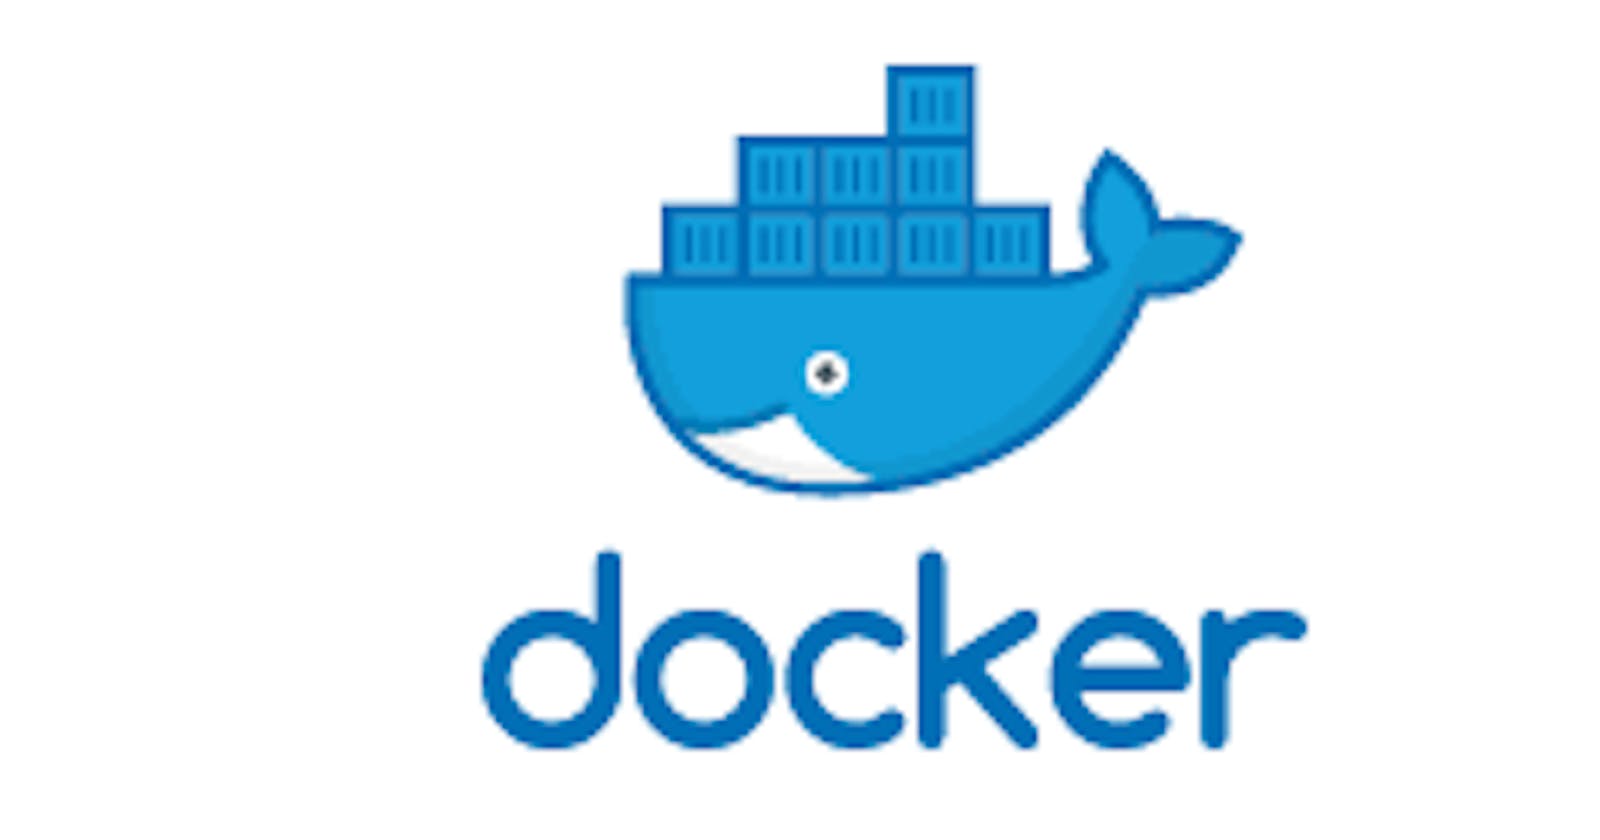 Docker Swarm in  a nutshell!